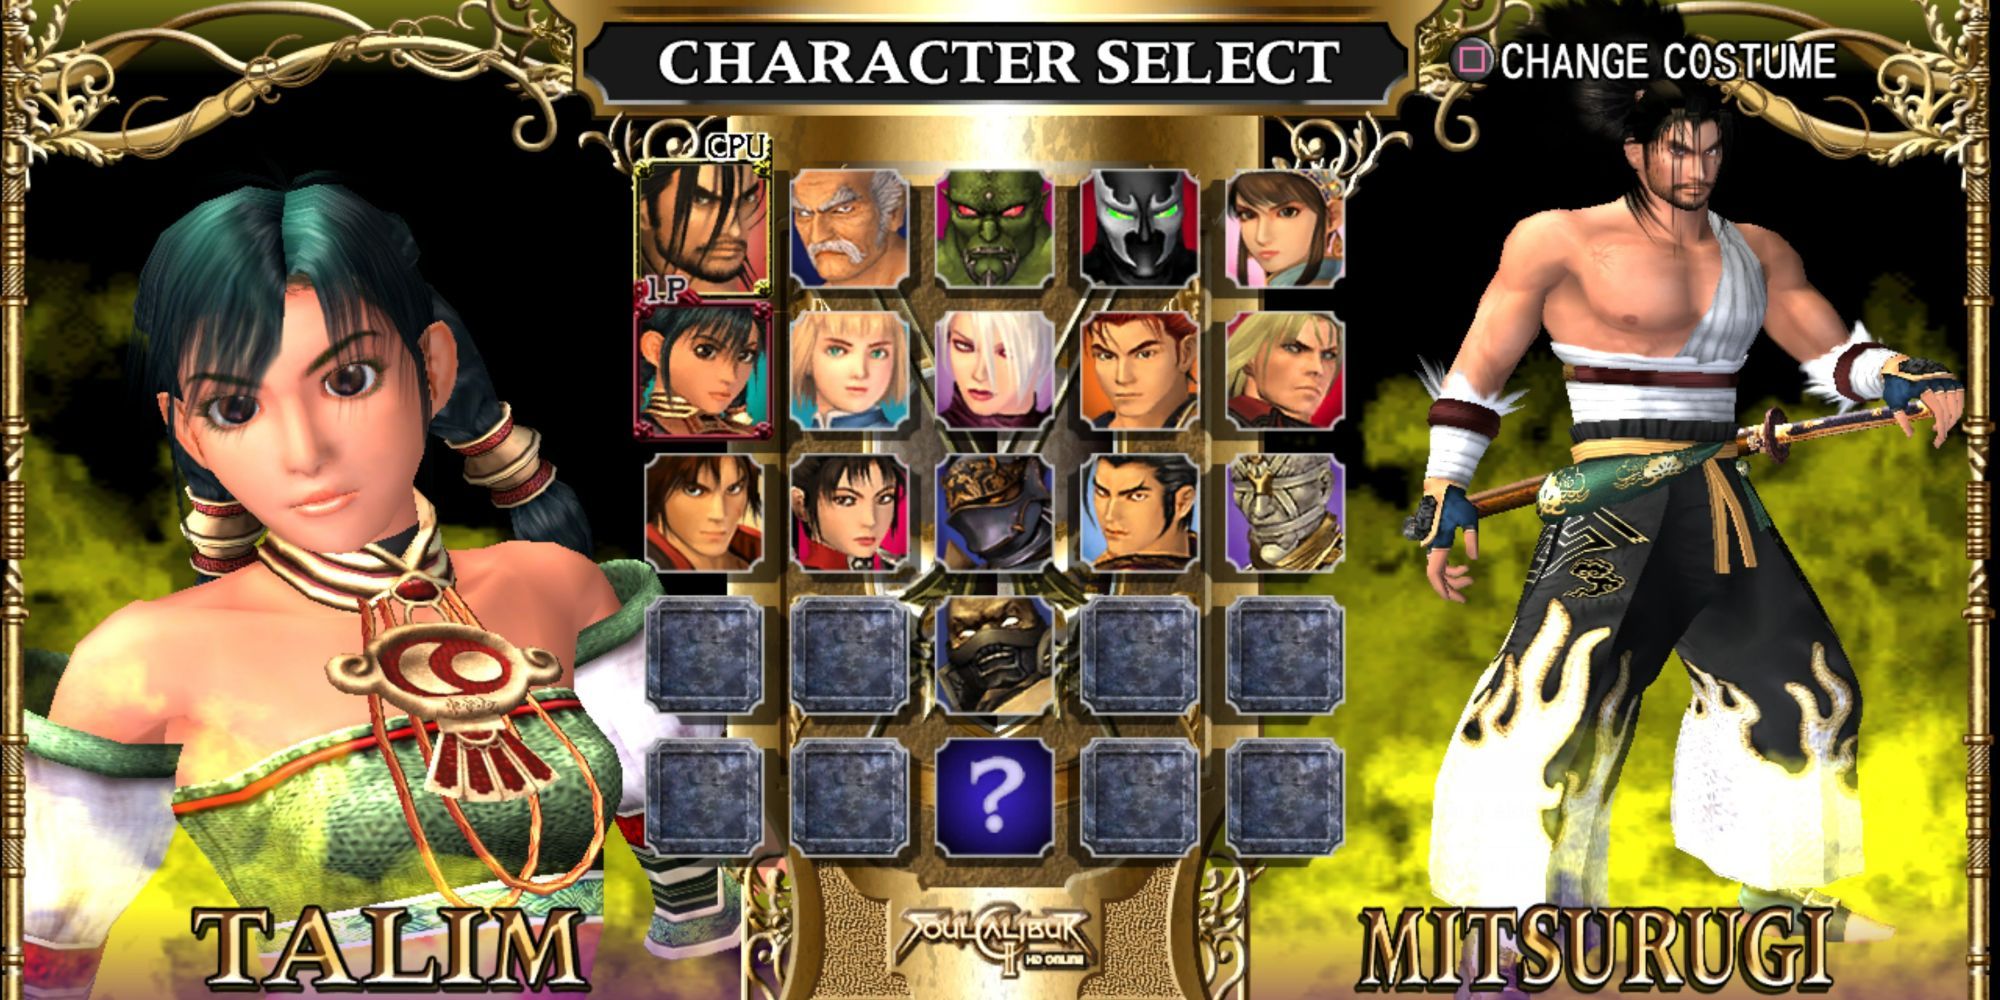 The character select screen in Soul Calibur II